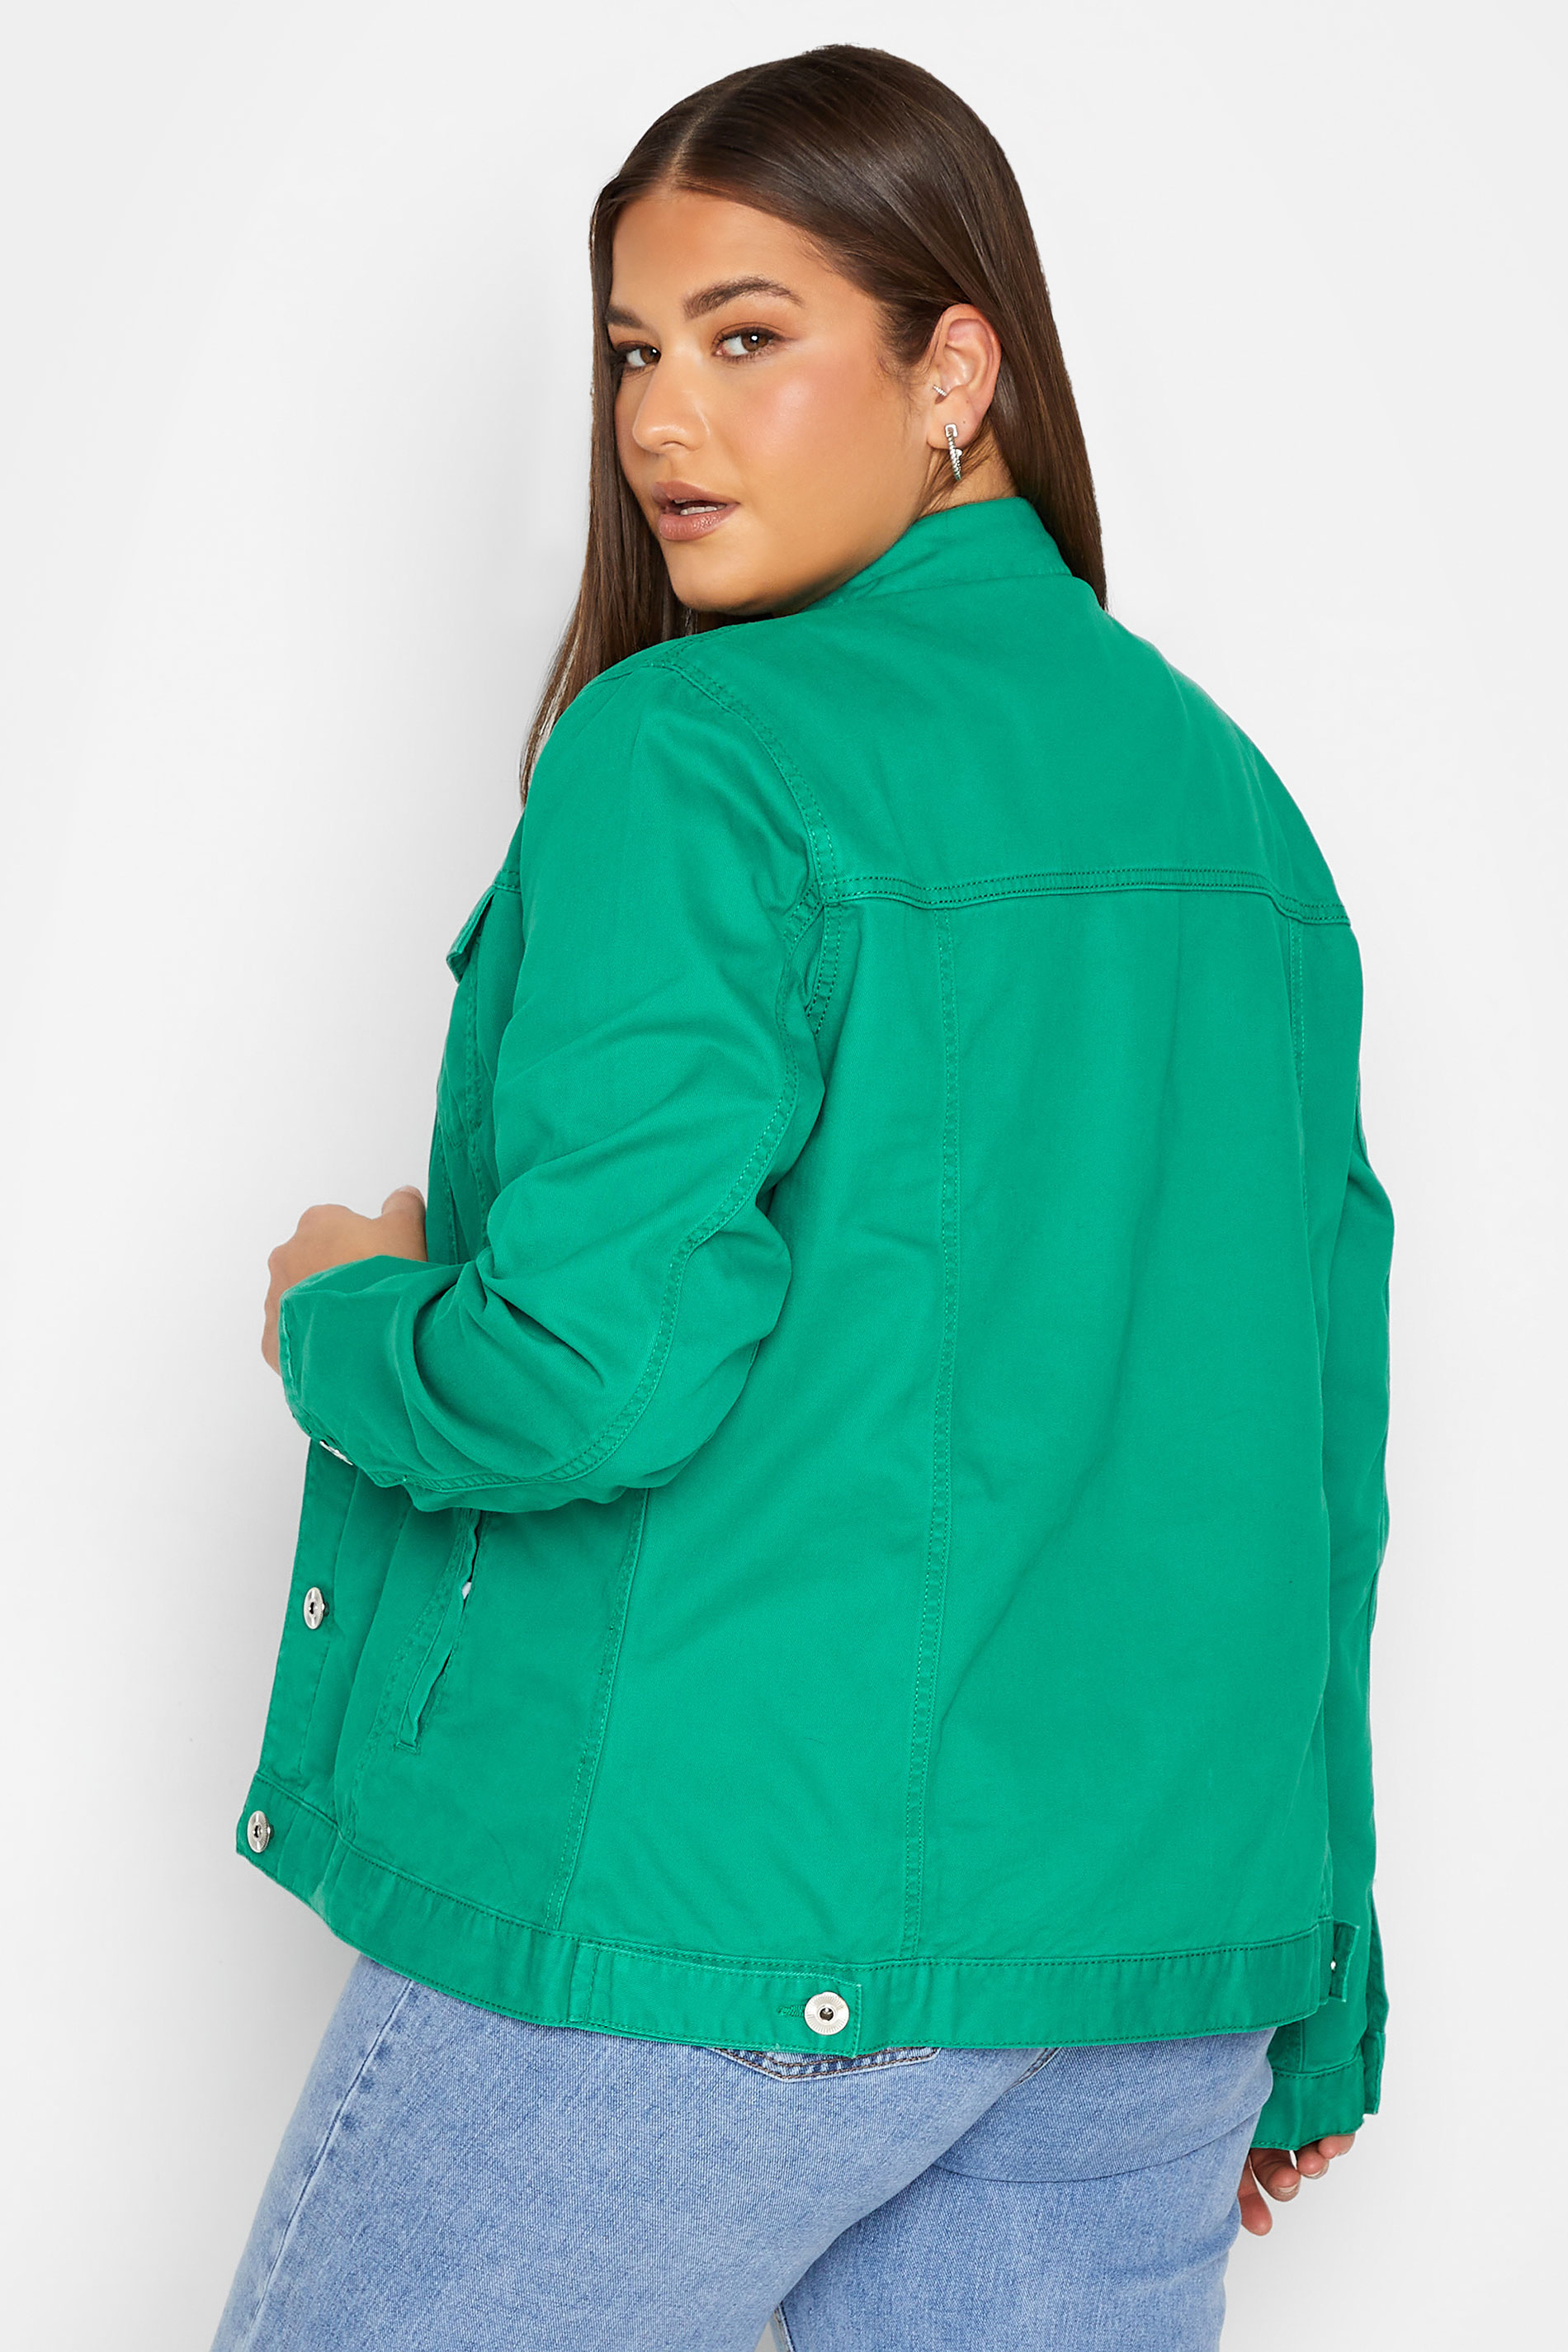 LTS Tall Women's Green Denim Jacket | Long Tall Sally 3